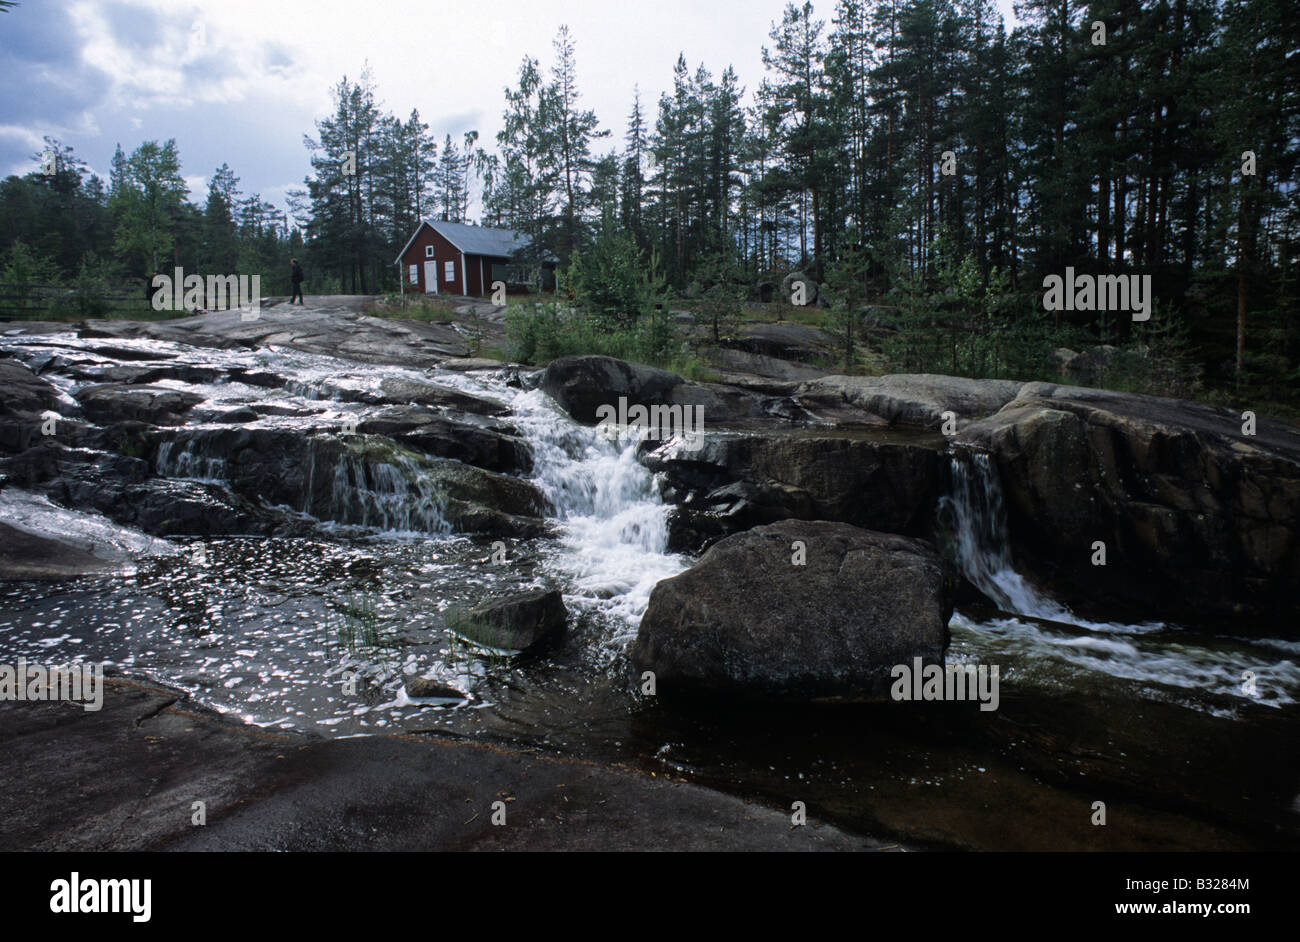 Suecia casa rural cerca de las cascadas del río Pitealven Storforsens Foto de stock